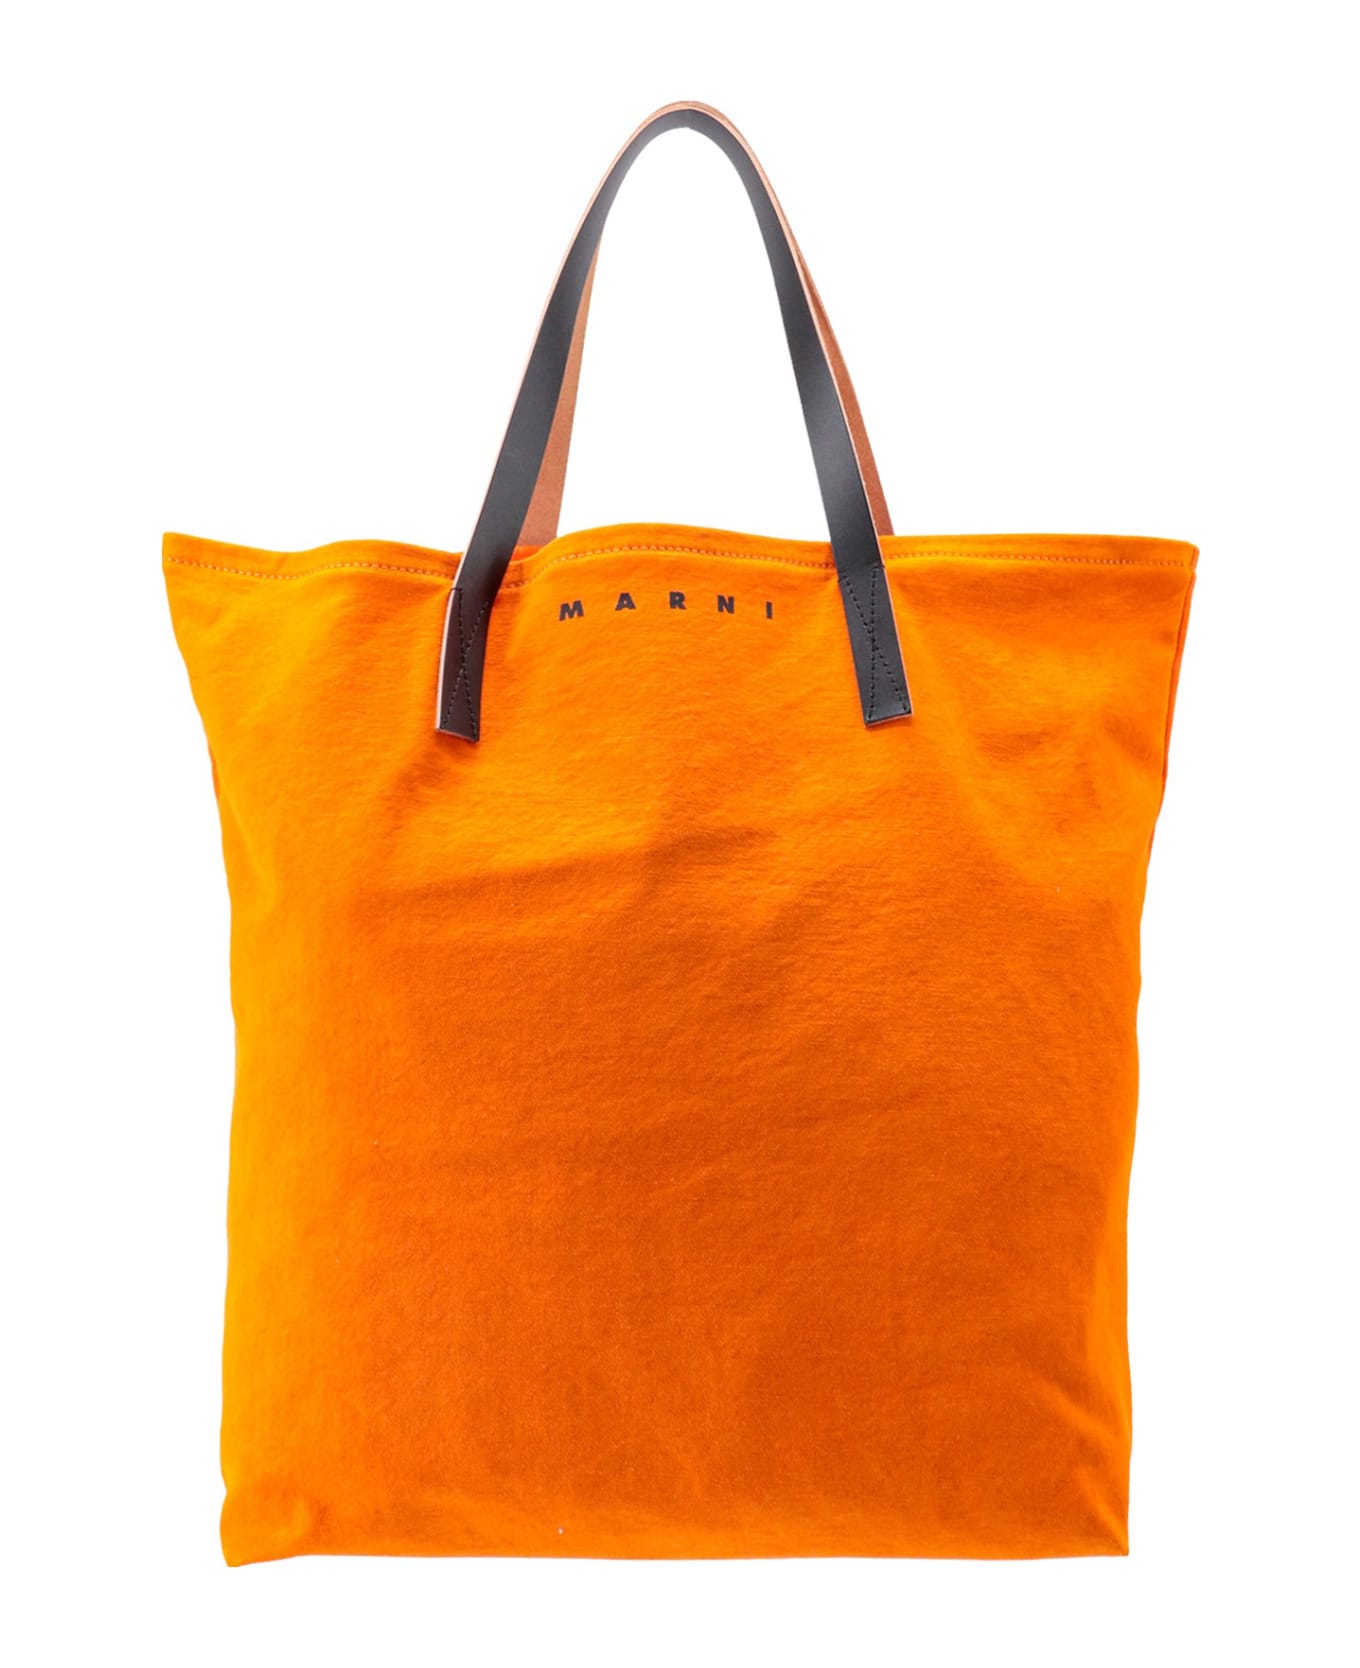 Marni Shoulder Bag - Orange トートバッグ